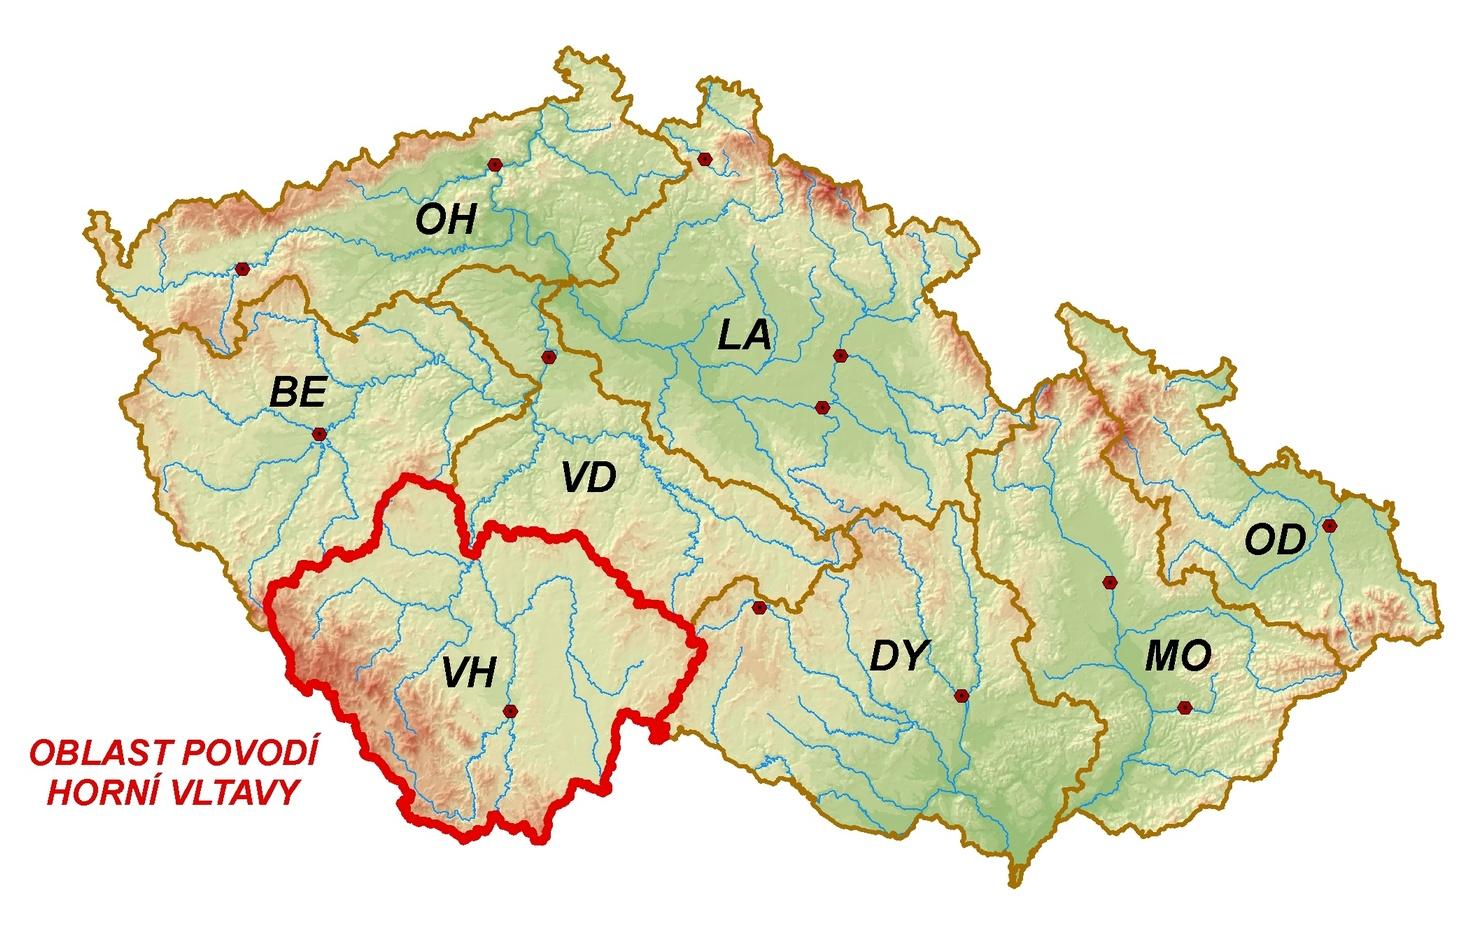 A.1. Všeobecný popis oblasti povodí A.1.1 Vymezení oblasti povodí Oblast povodí Horní Vltavy představuje geograficky poměrně uzavřený celek, jehoţ jádro tvoří jihočeská kotlina.